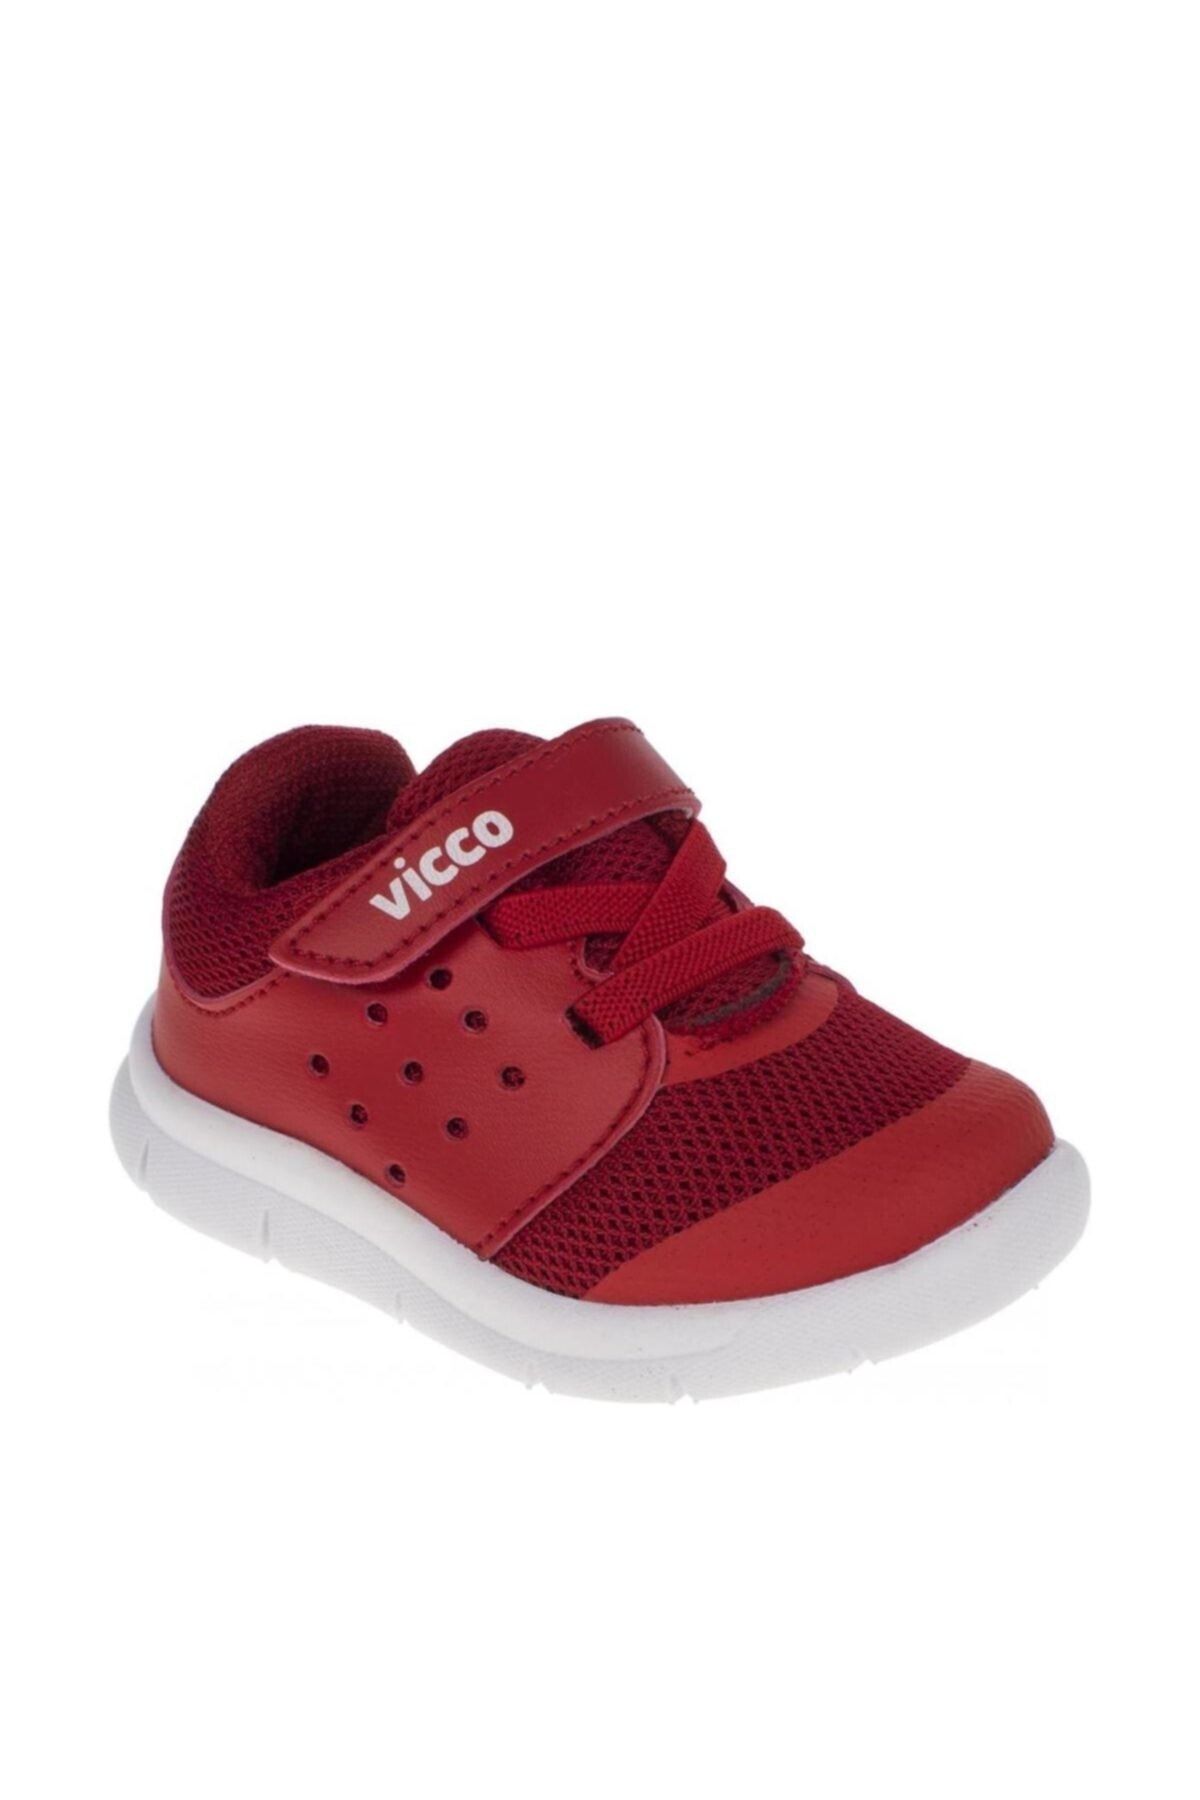 Vicco Kız Çocuk Kırmızı Sneaker 211 303.19y189ı